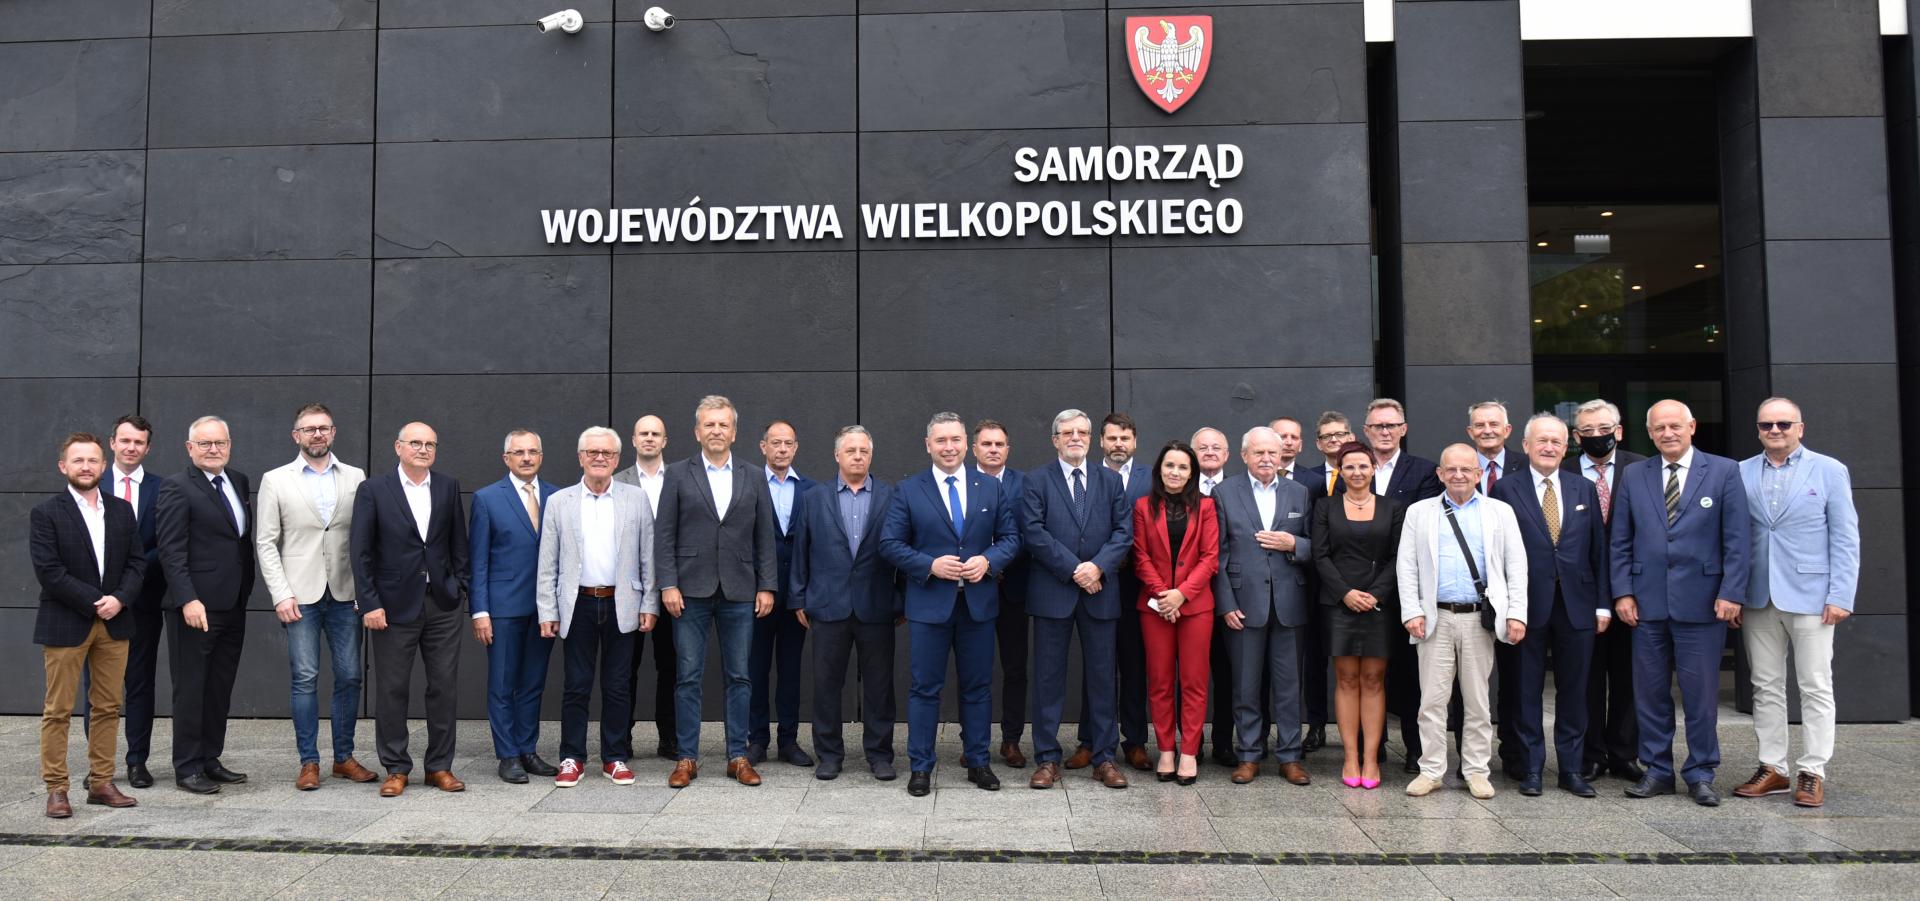 Posiedzenie inauguracyjne Wielkopolskiej Rady Trzydziestu nowej kadencji - zobacz więcej